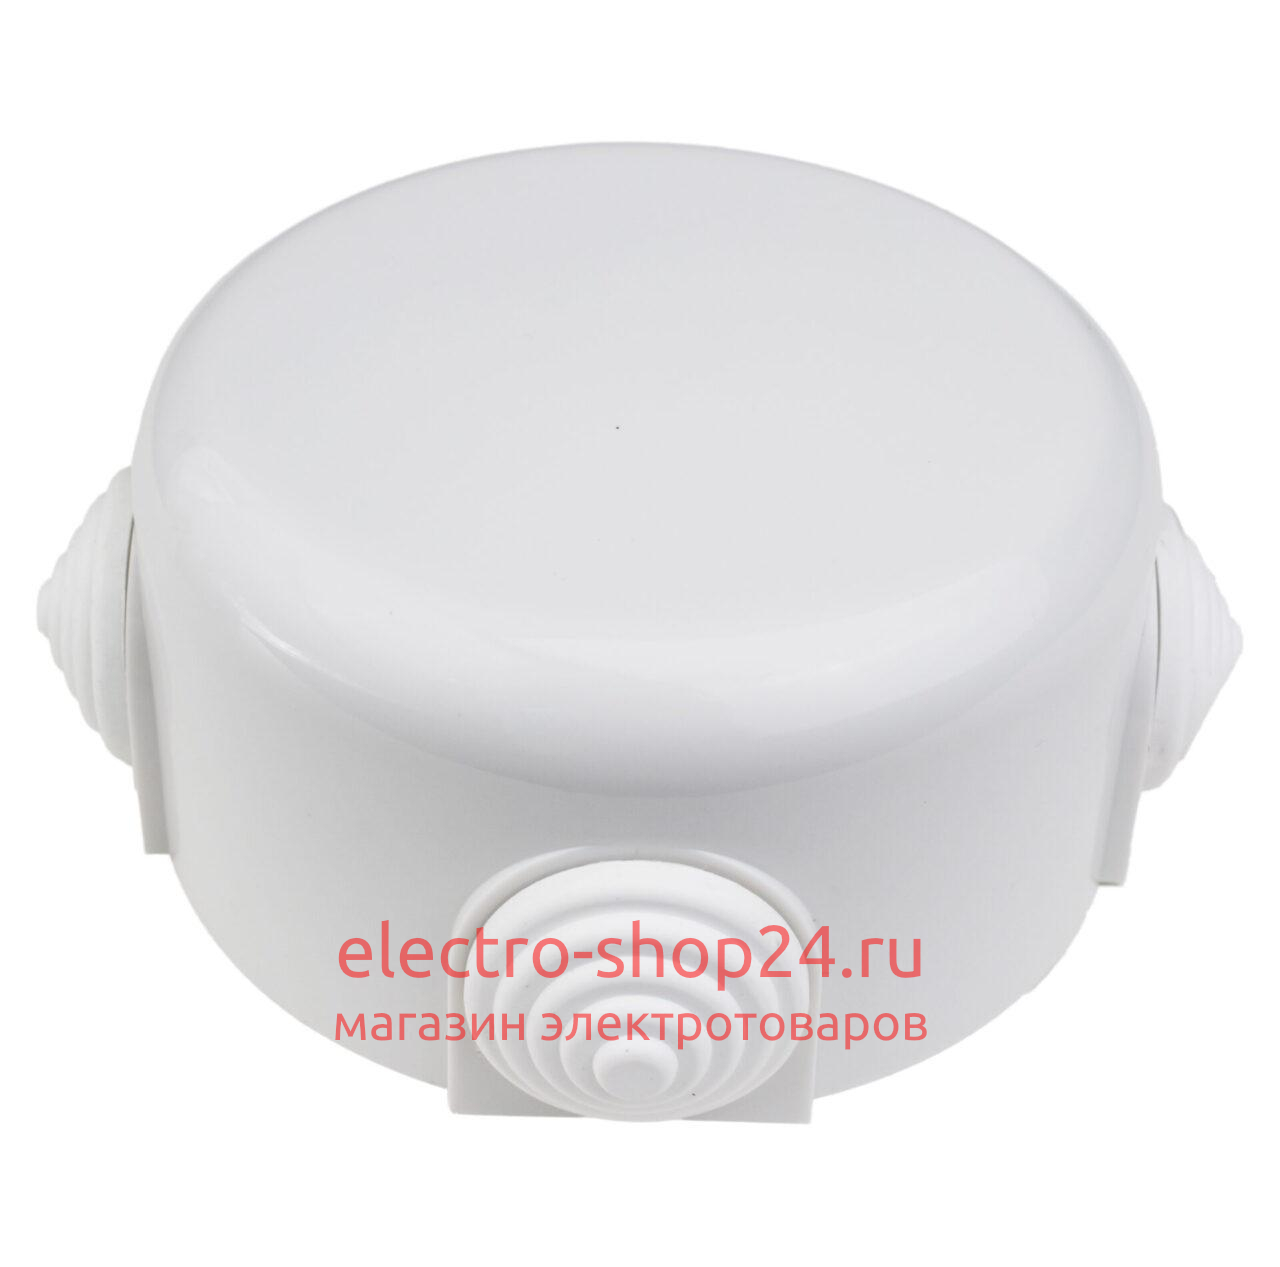 Коробка распределительная D90*45мм (4 кабельных ввода в комплекте) Bironi Ришелье пластик белый R1-523-21-K R1-523-21-K - магазин электротехники Electroshop